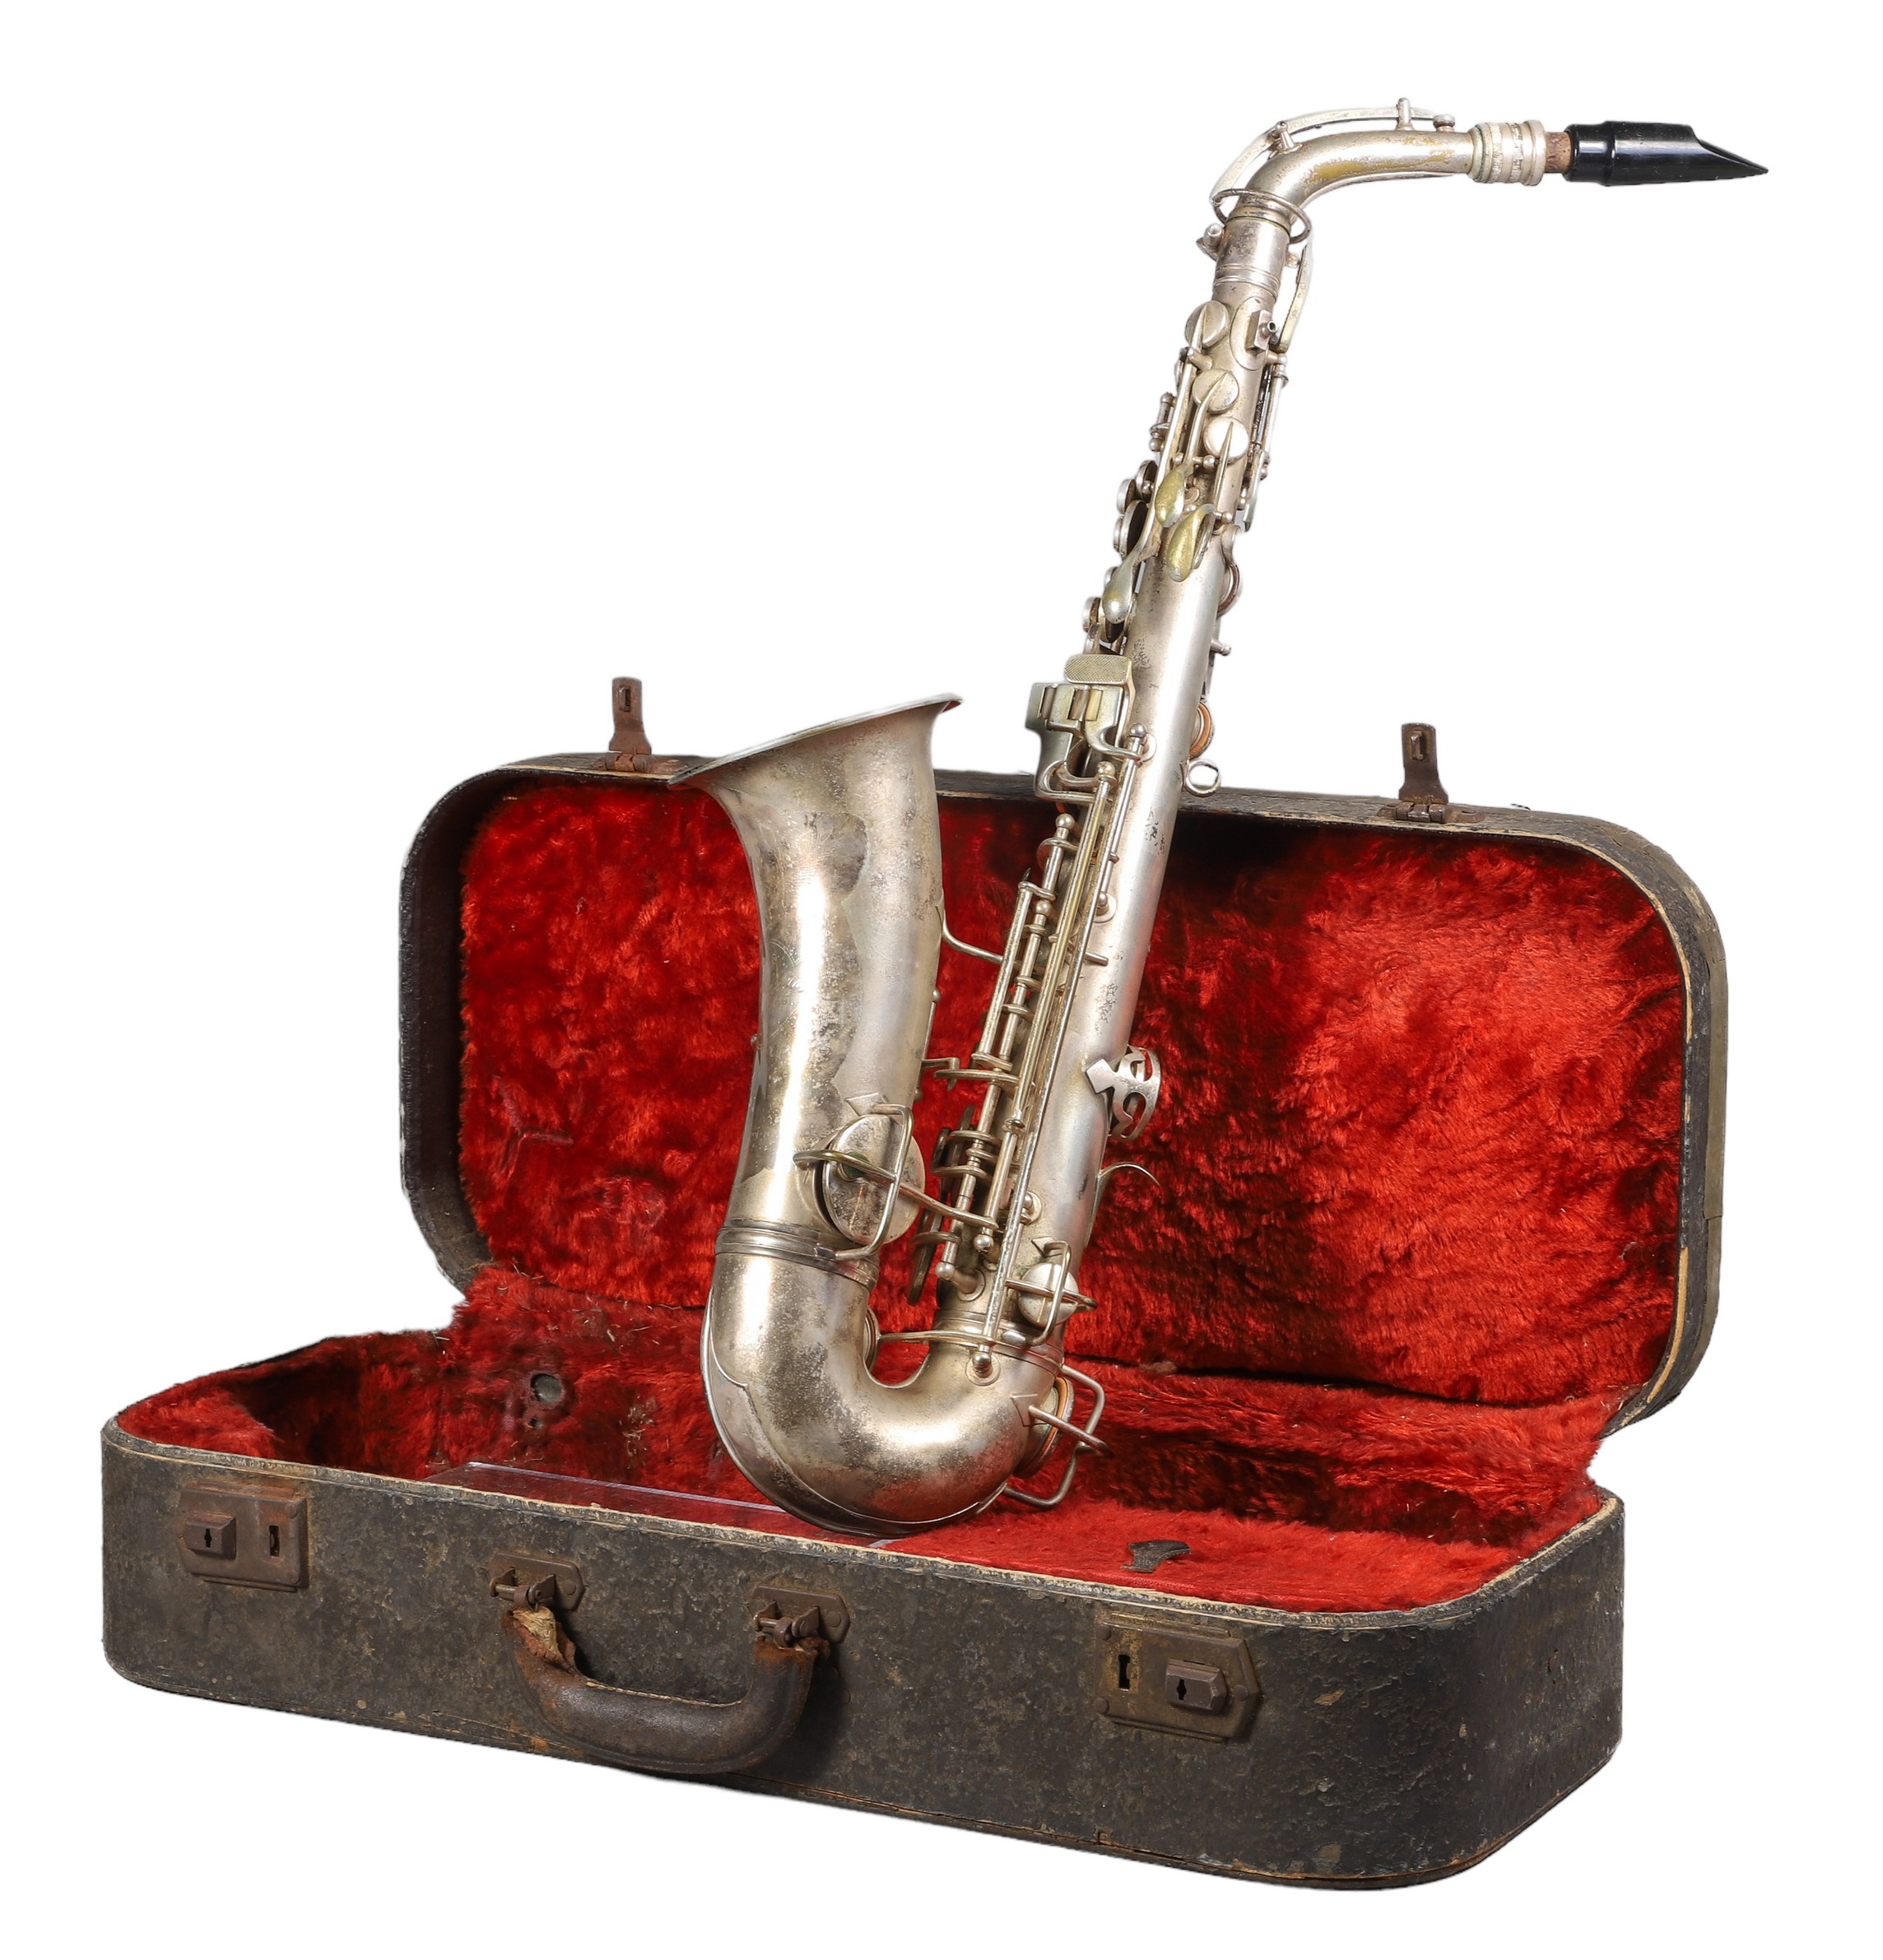 CG Conn silver plate saxophone,